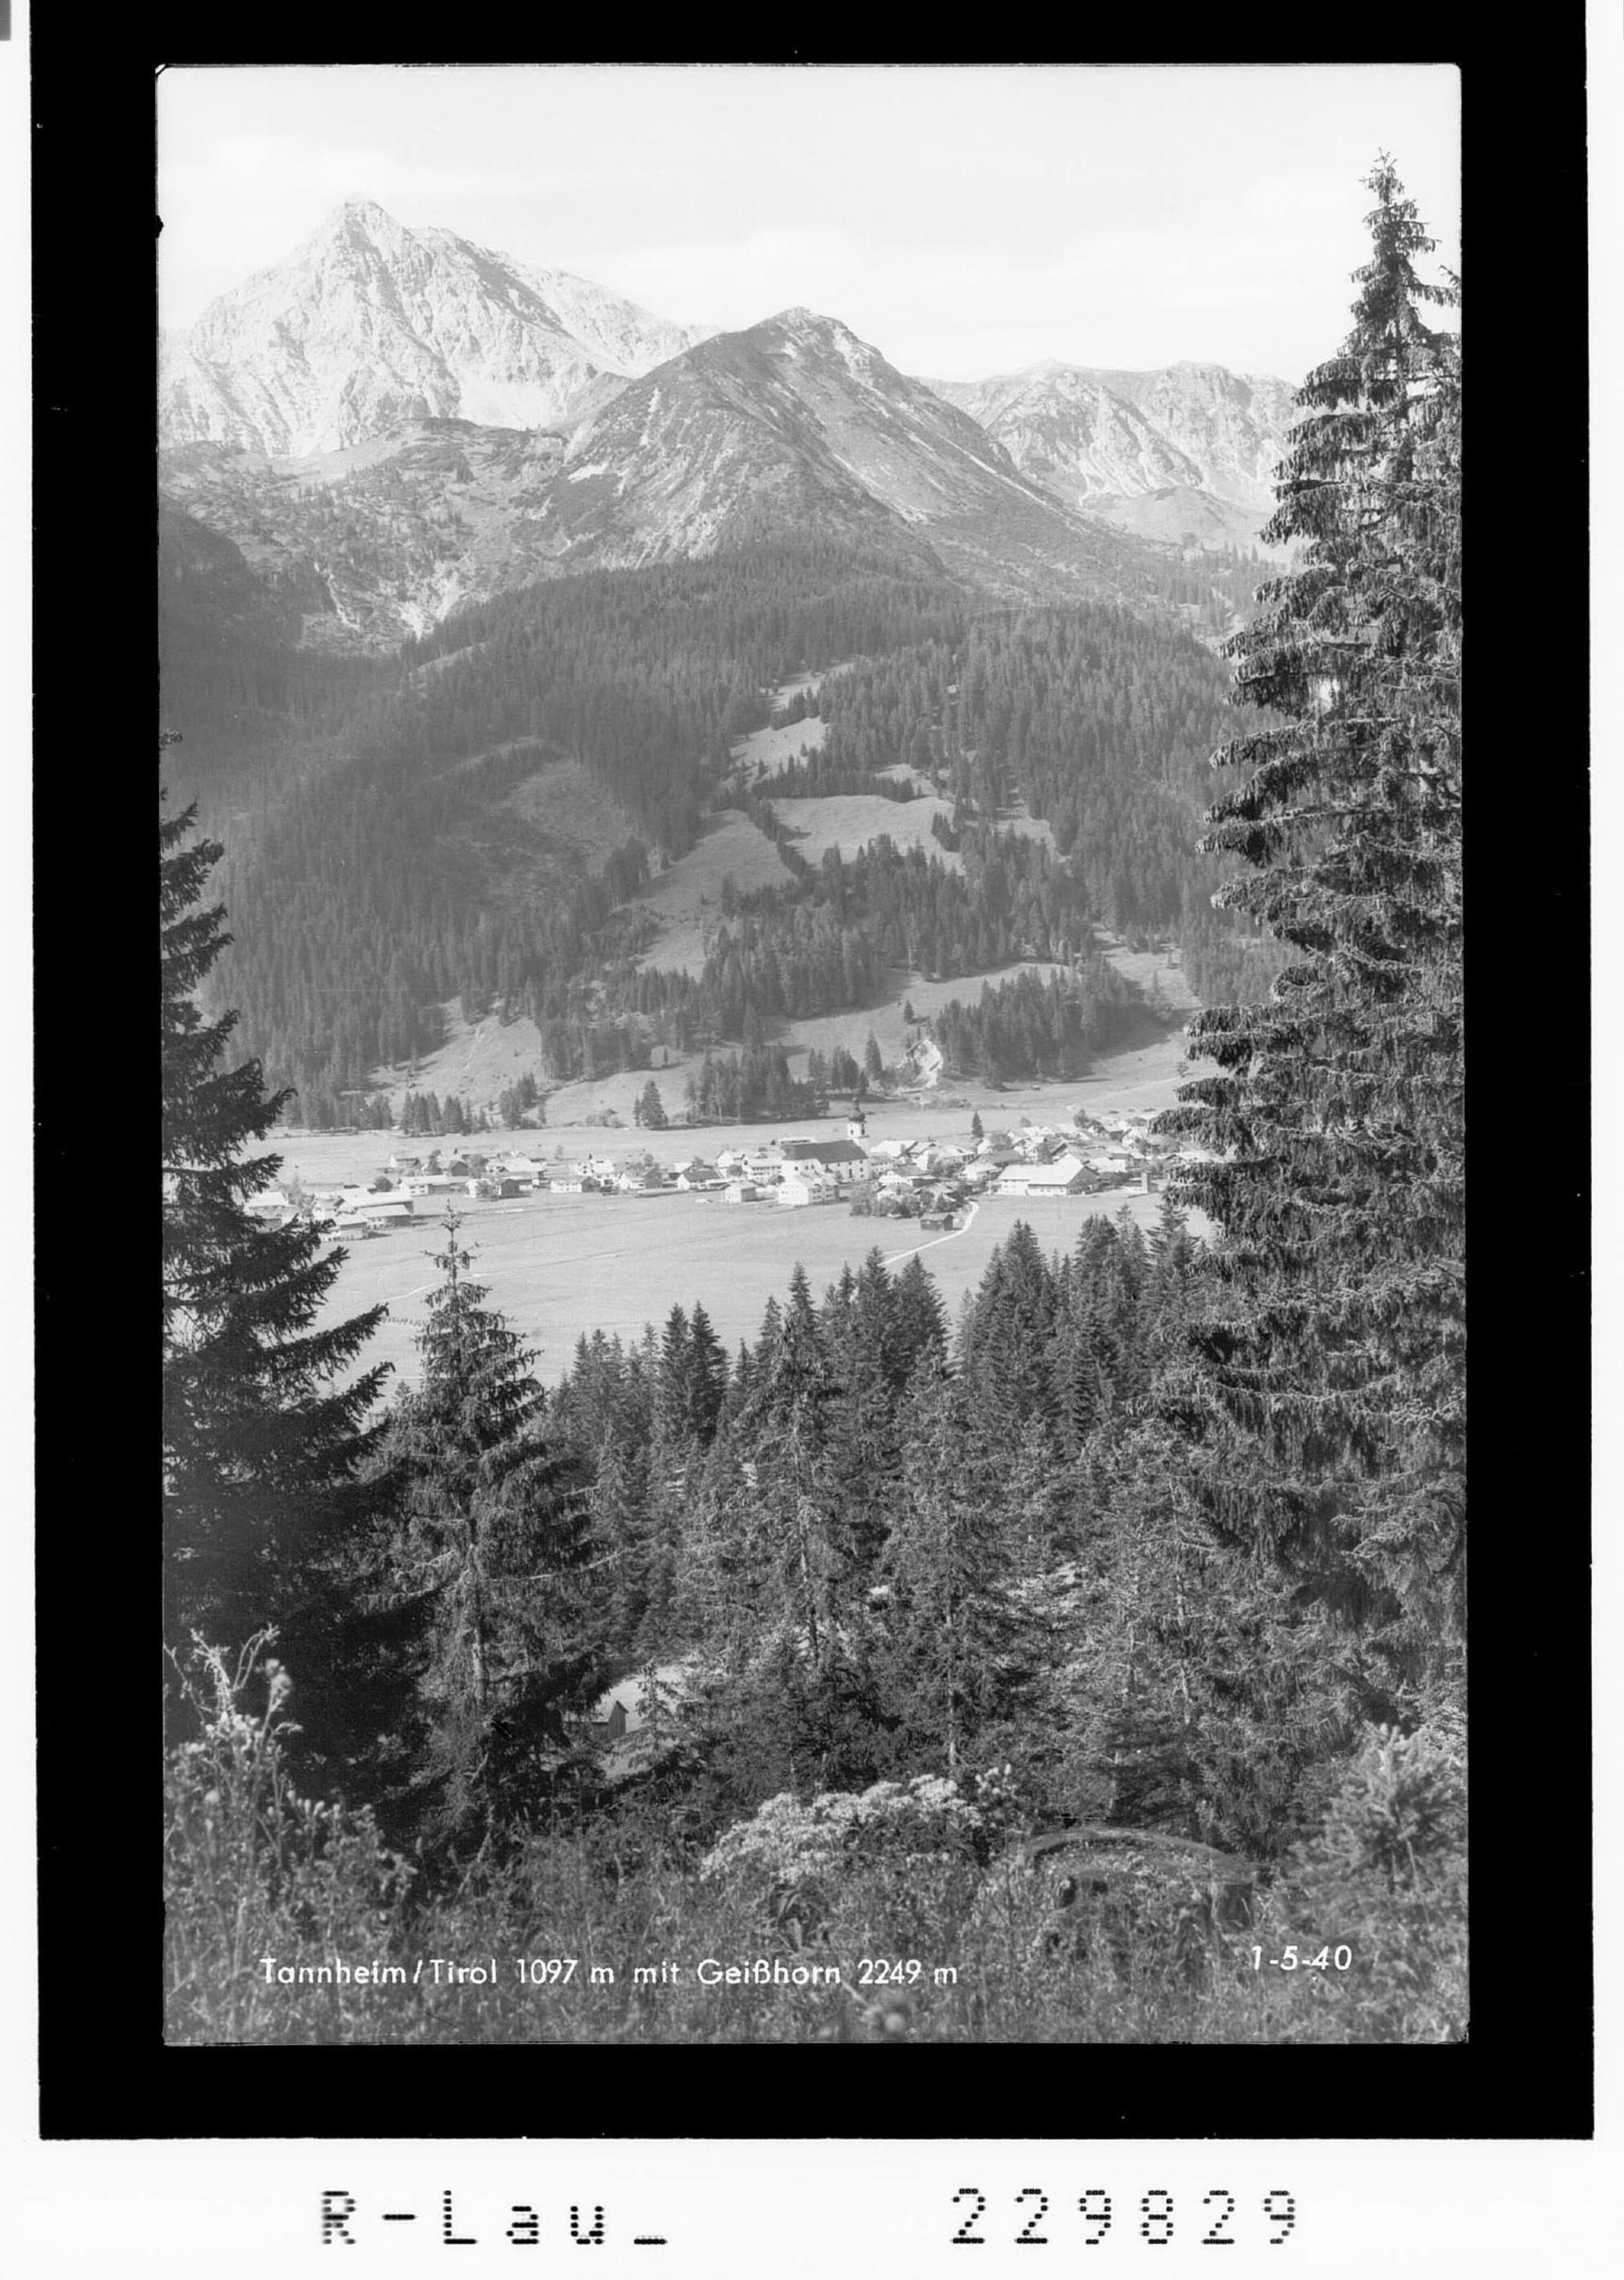 Tannheim / Tirol 1097 m mit mit Geißhorn 2249 m></div>


    <hr>
    <div class=